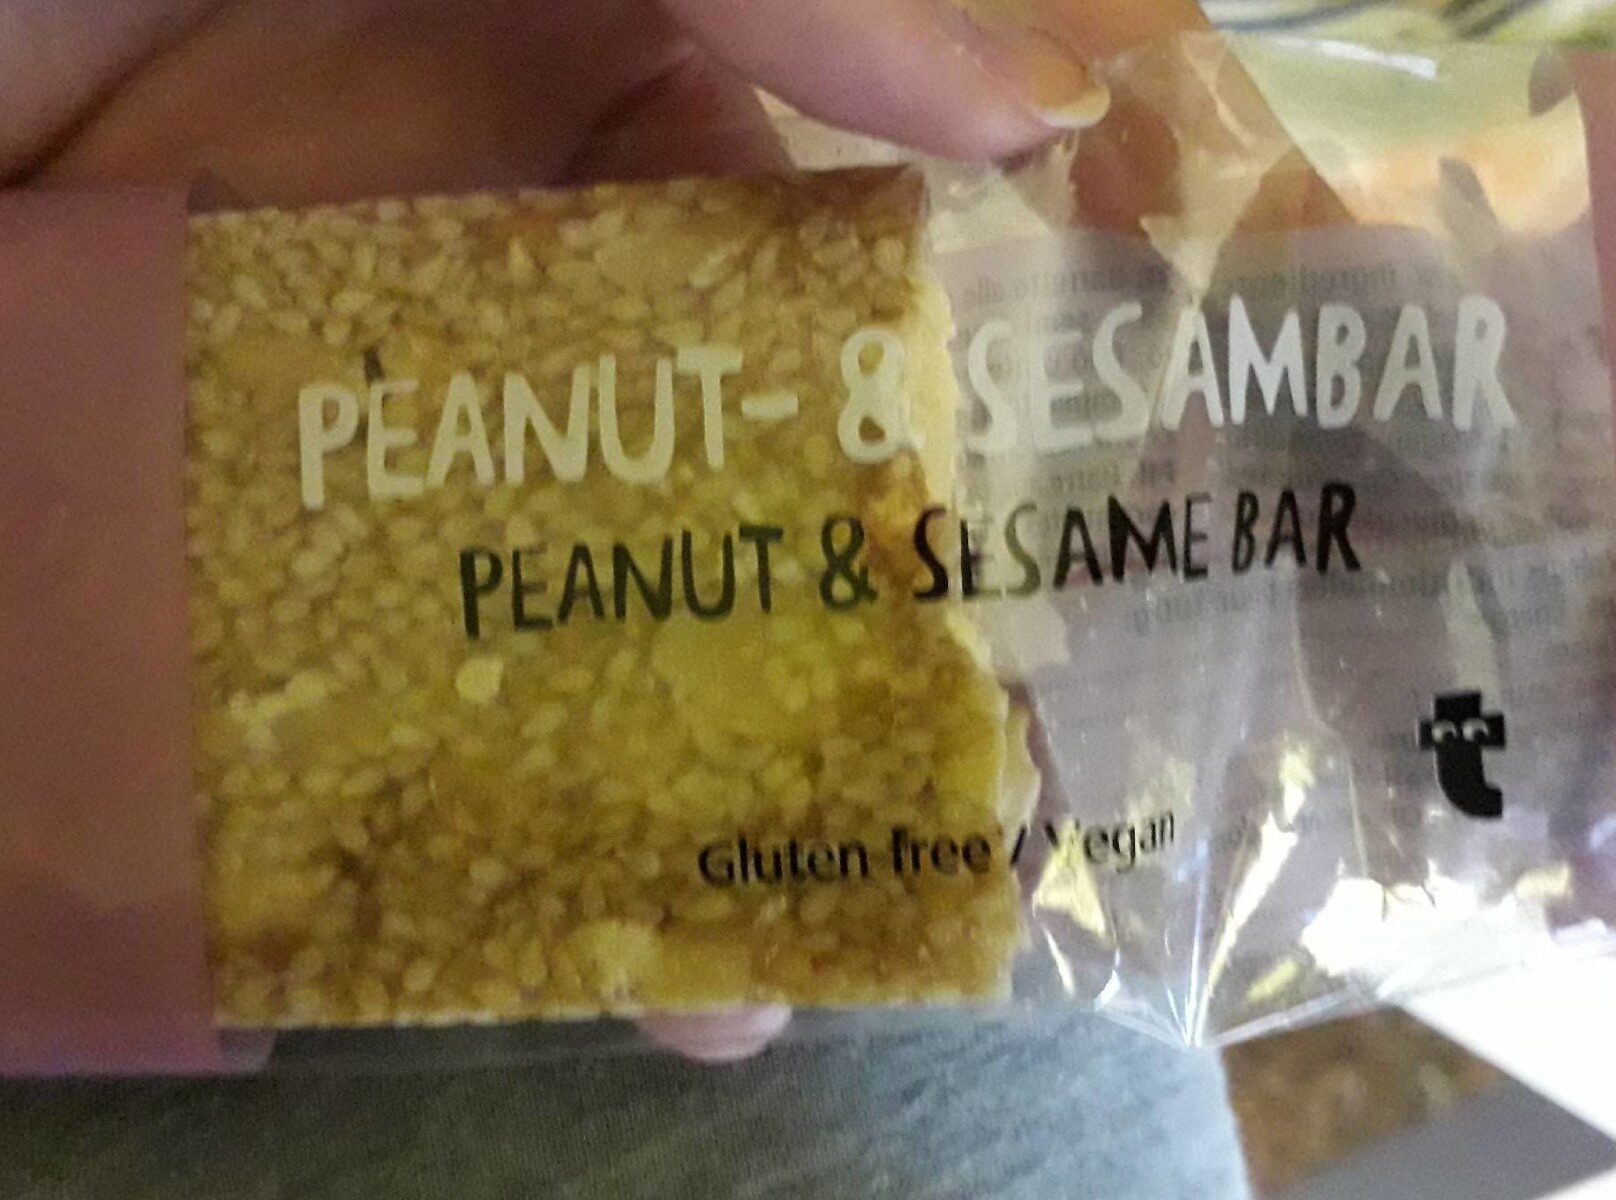 Peanut-&sesambar - Producto